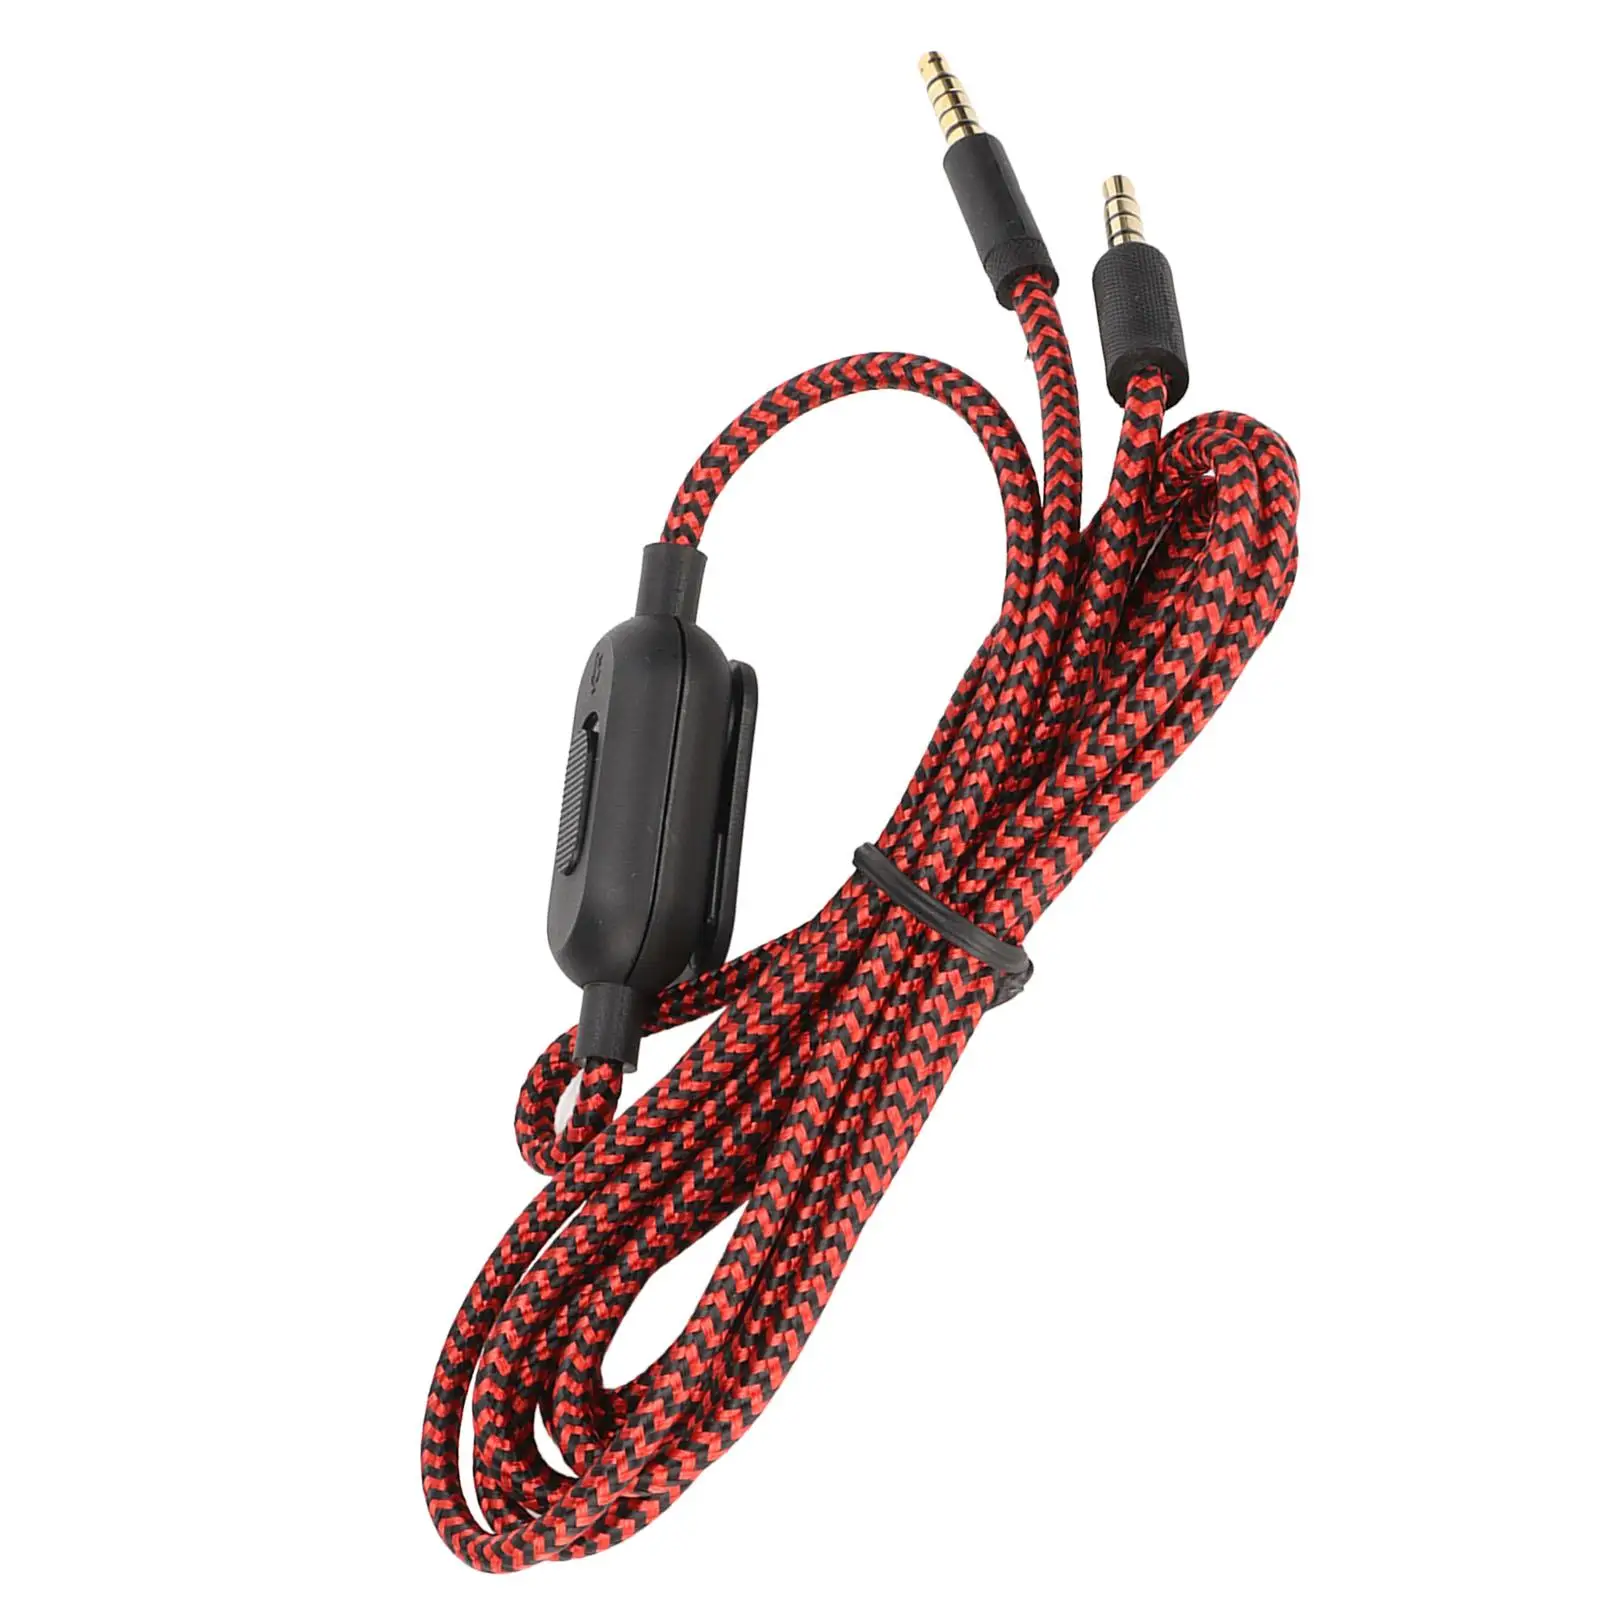 Cable de auriculares con Control de volumen y micrófono para teléfono Logitech G433/G233/G Pro X PC